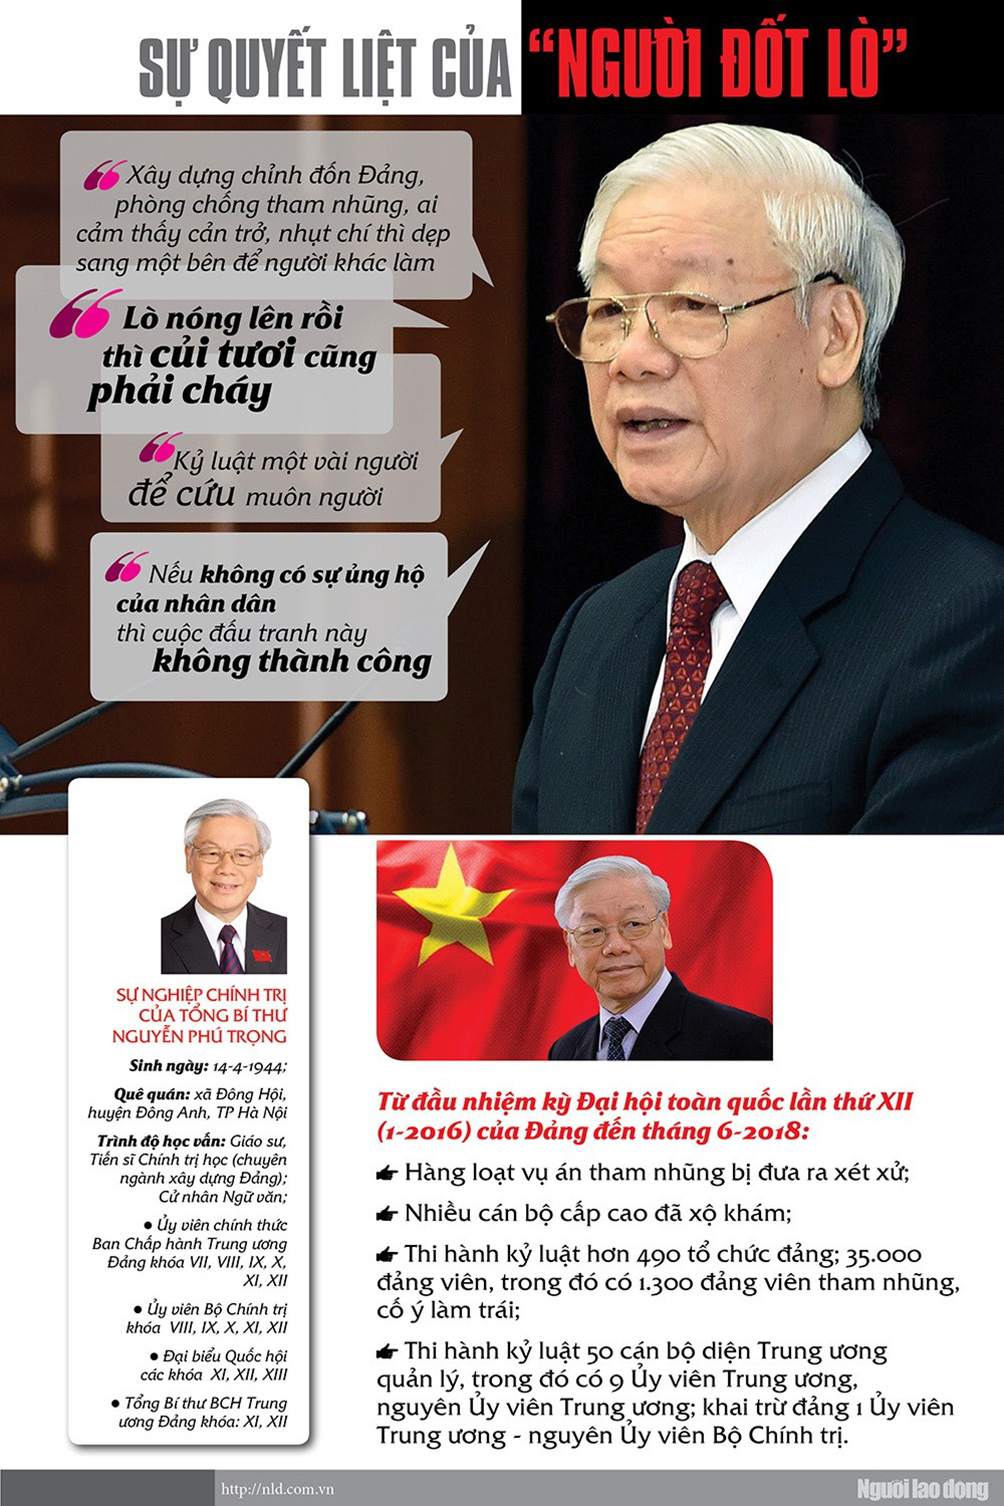 [Infographic] - Tổng Bí thư Nguyễn Phú Trọng và quyết tâm chống tham nhũng, chỉnh đốn Đảng - 1